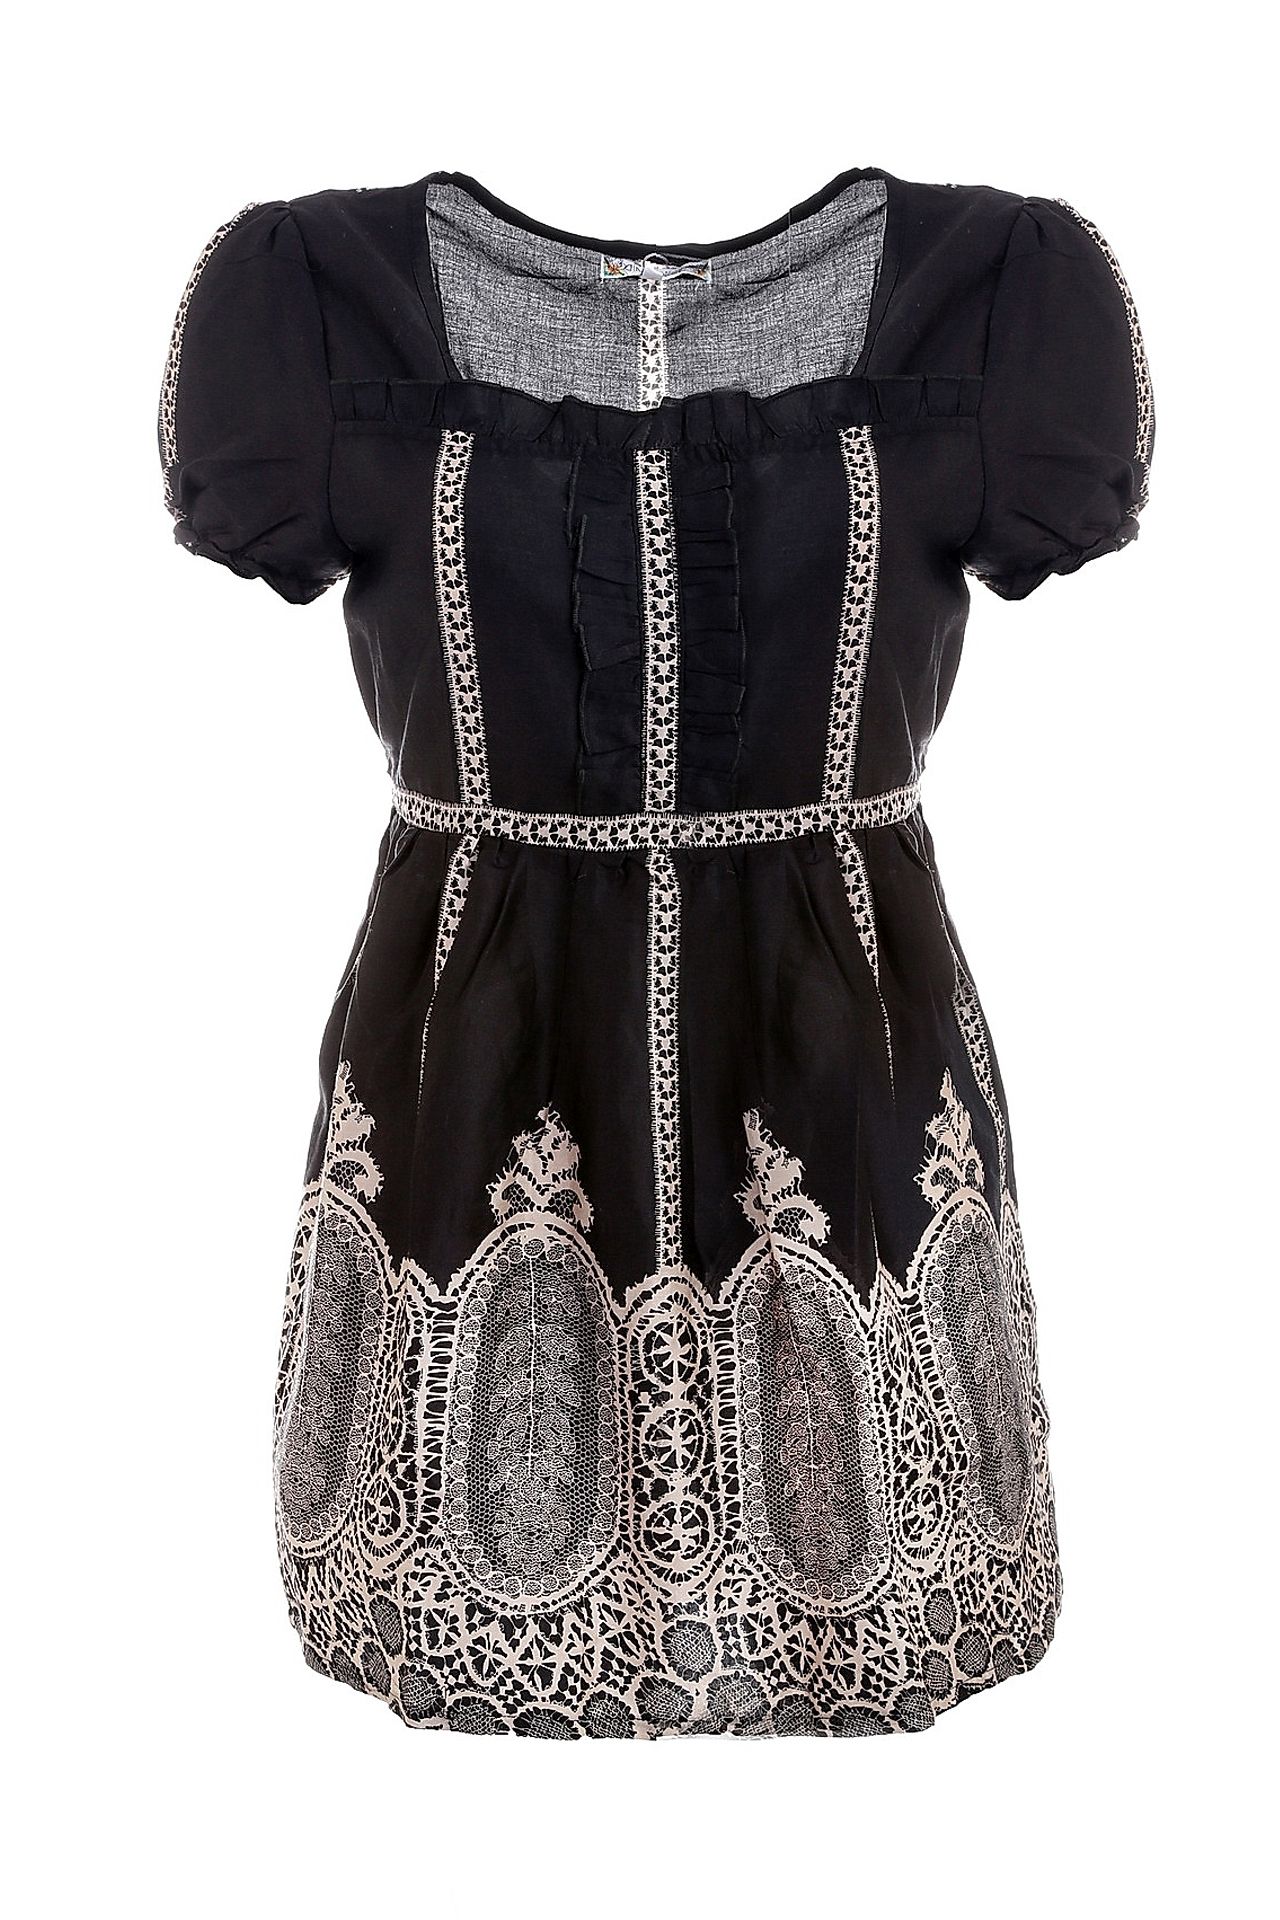 Одежда женская Платье MYOKE (321206/11.2). Купить за 3900 руб.